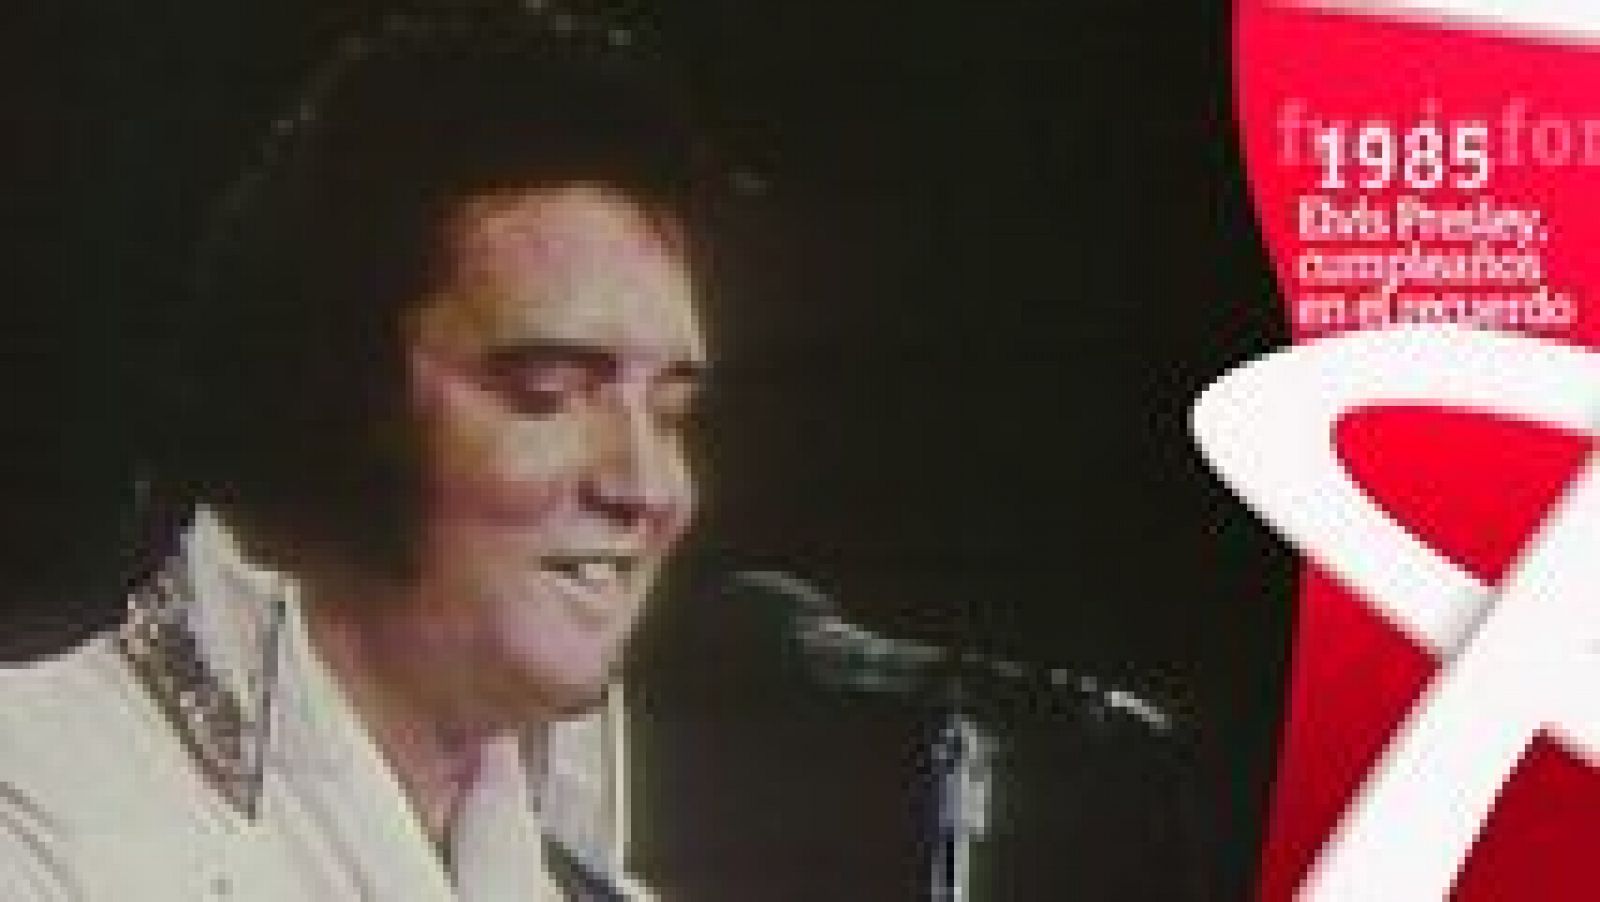 Fue informe - Elvis Presley, cumpleaños en el recuerdo (1985) - ver ahora  